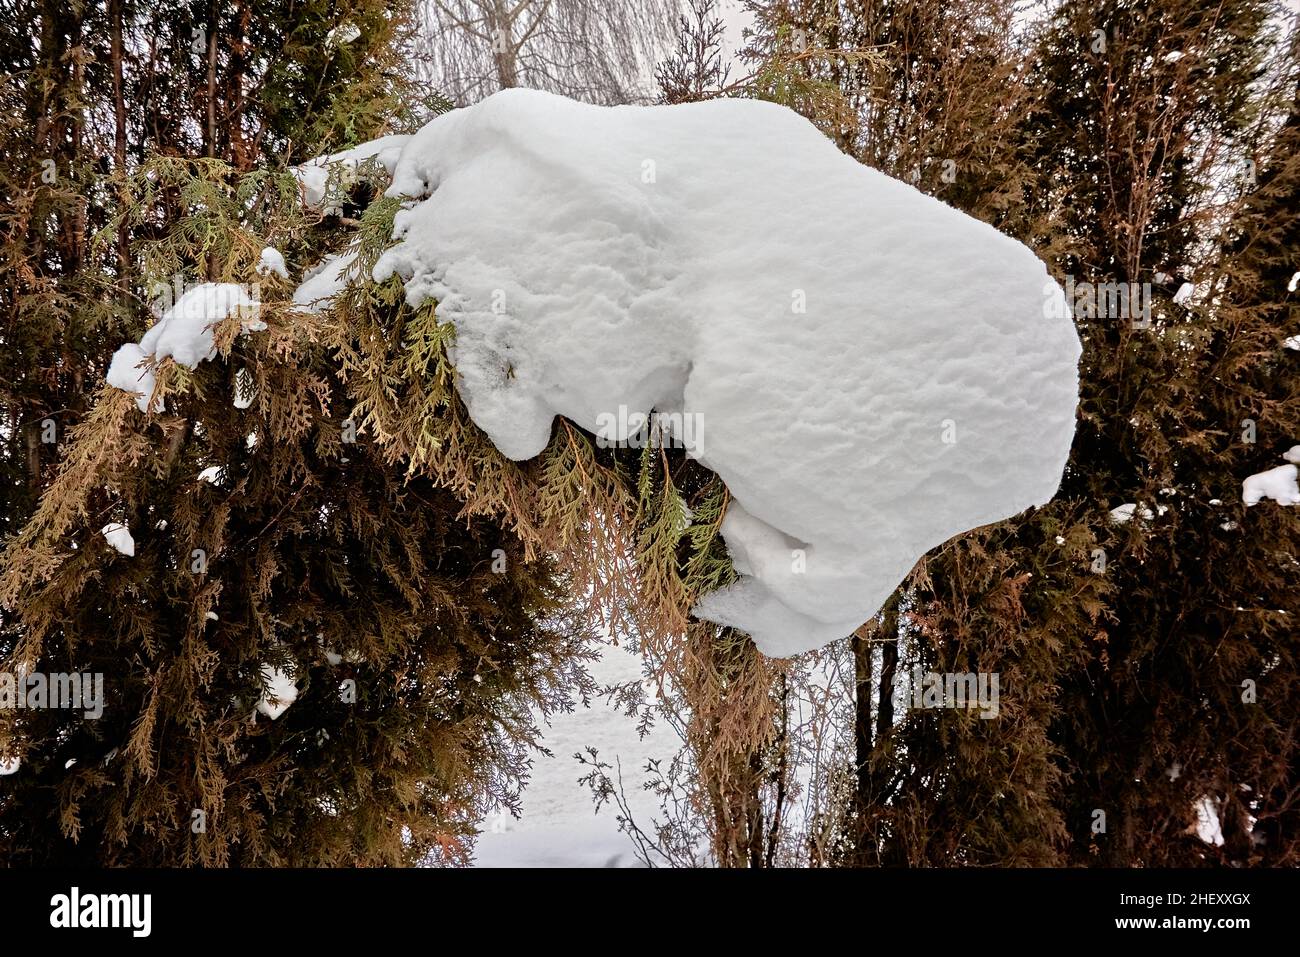 La palla di neve, dopo i cambiamenti di vento e temperatura, ha acquisito una forma scultorea. I contorni di un essere vivente, un busto, sono visibili. Russia, natura Foto Stock